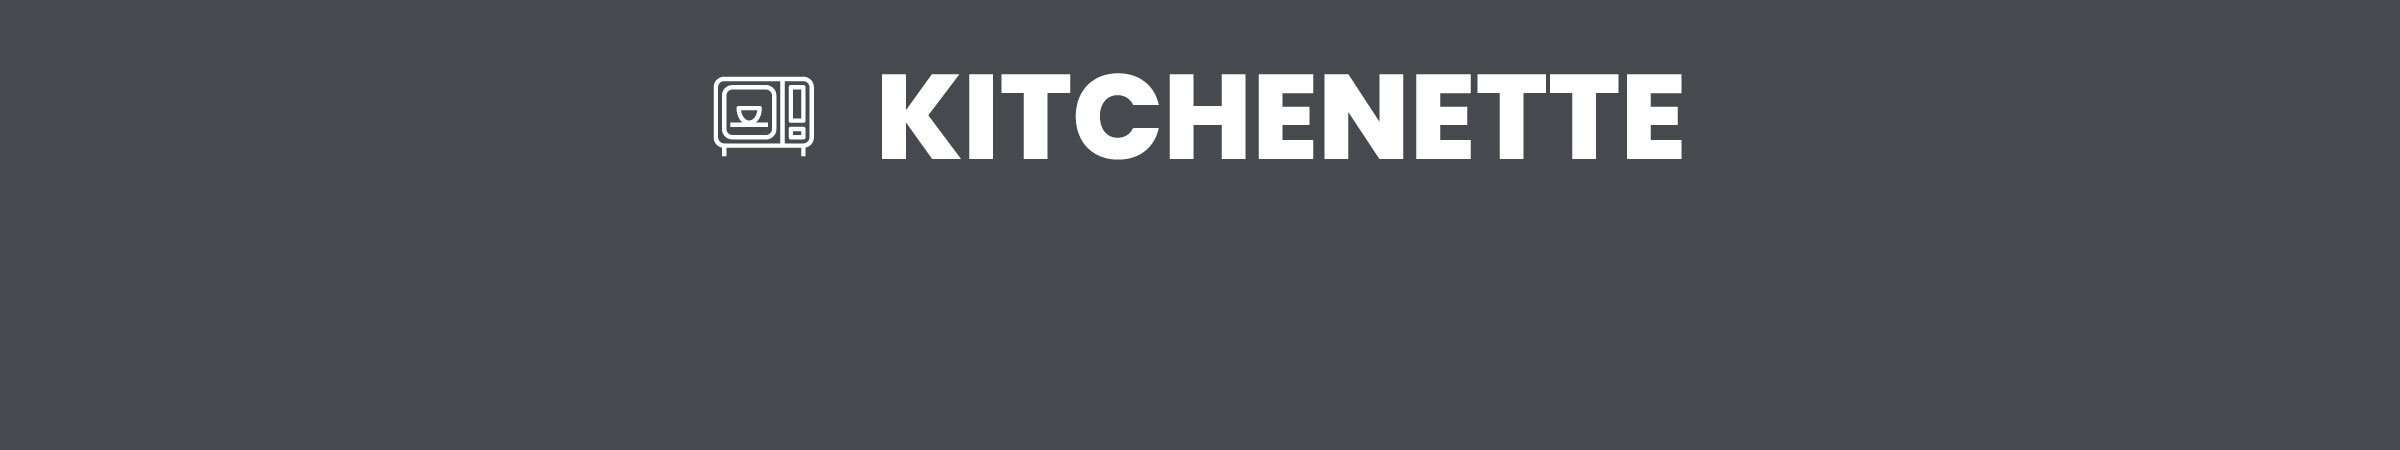 3-Kitchenette.jpg